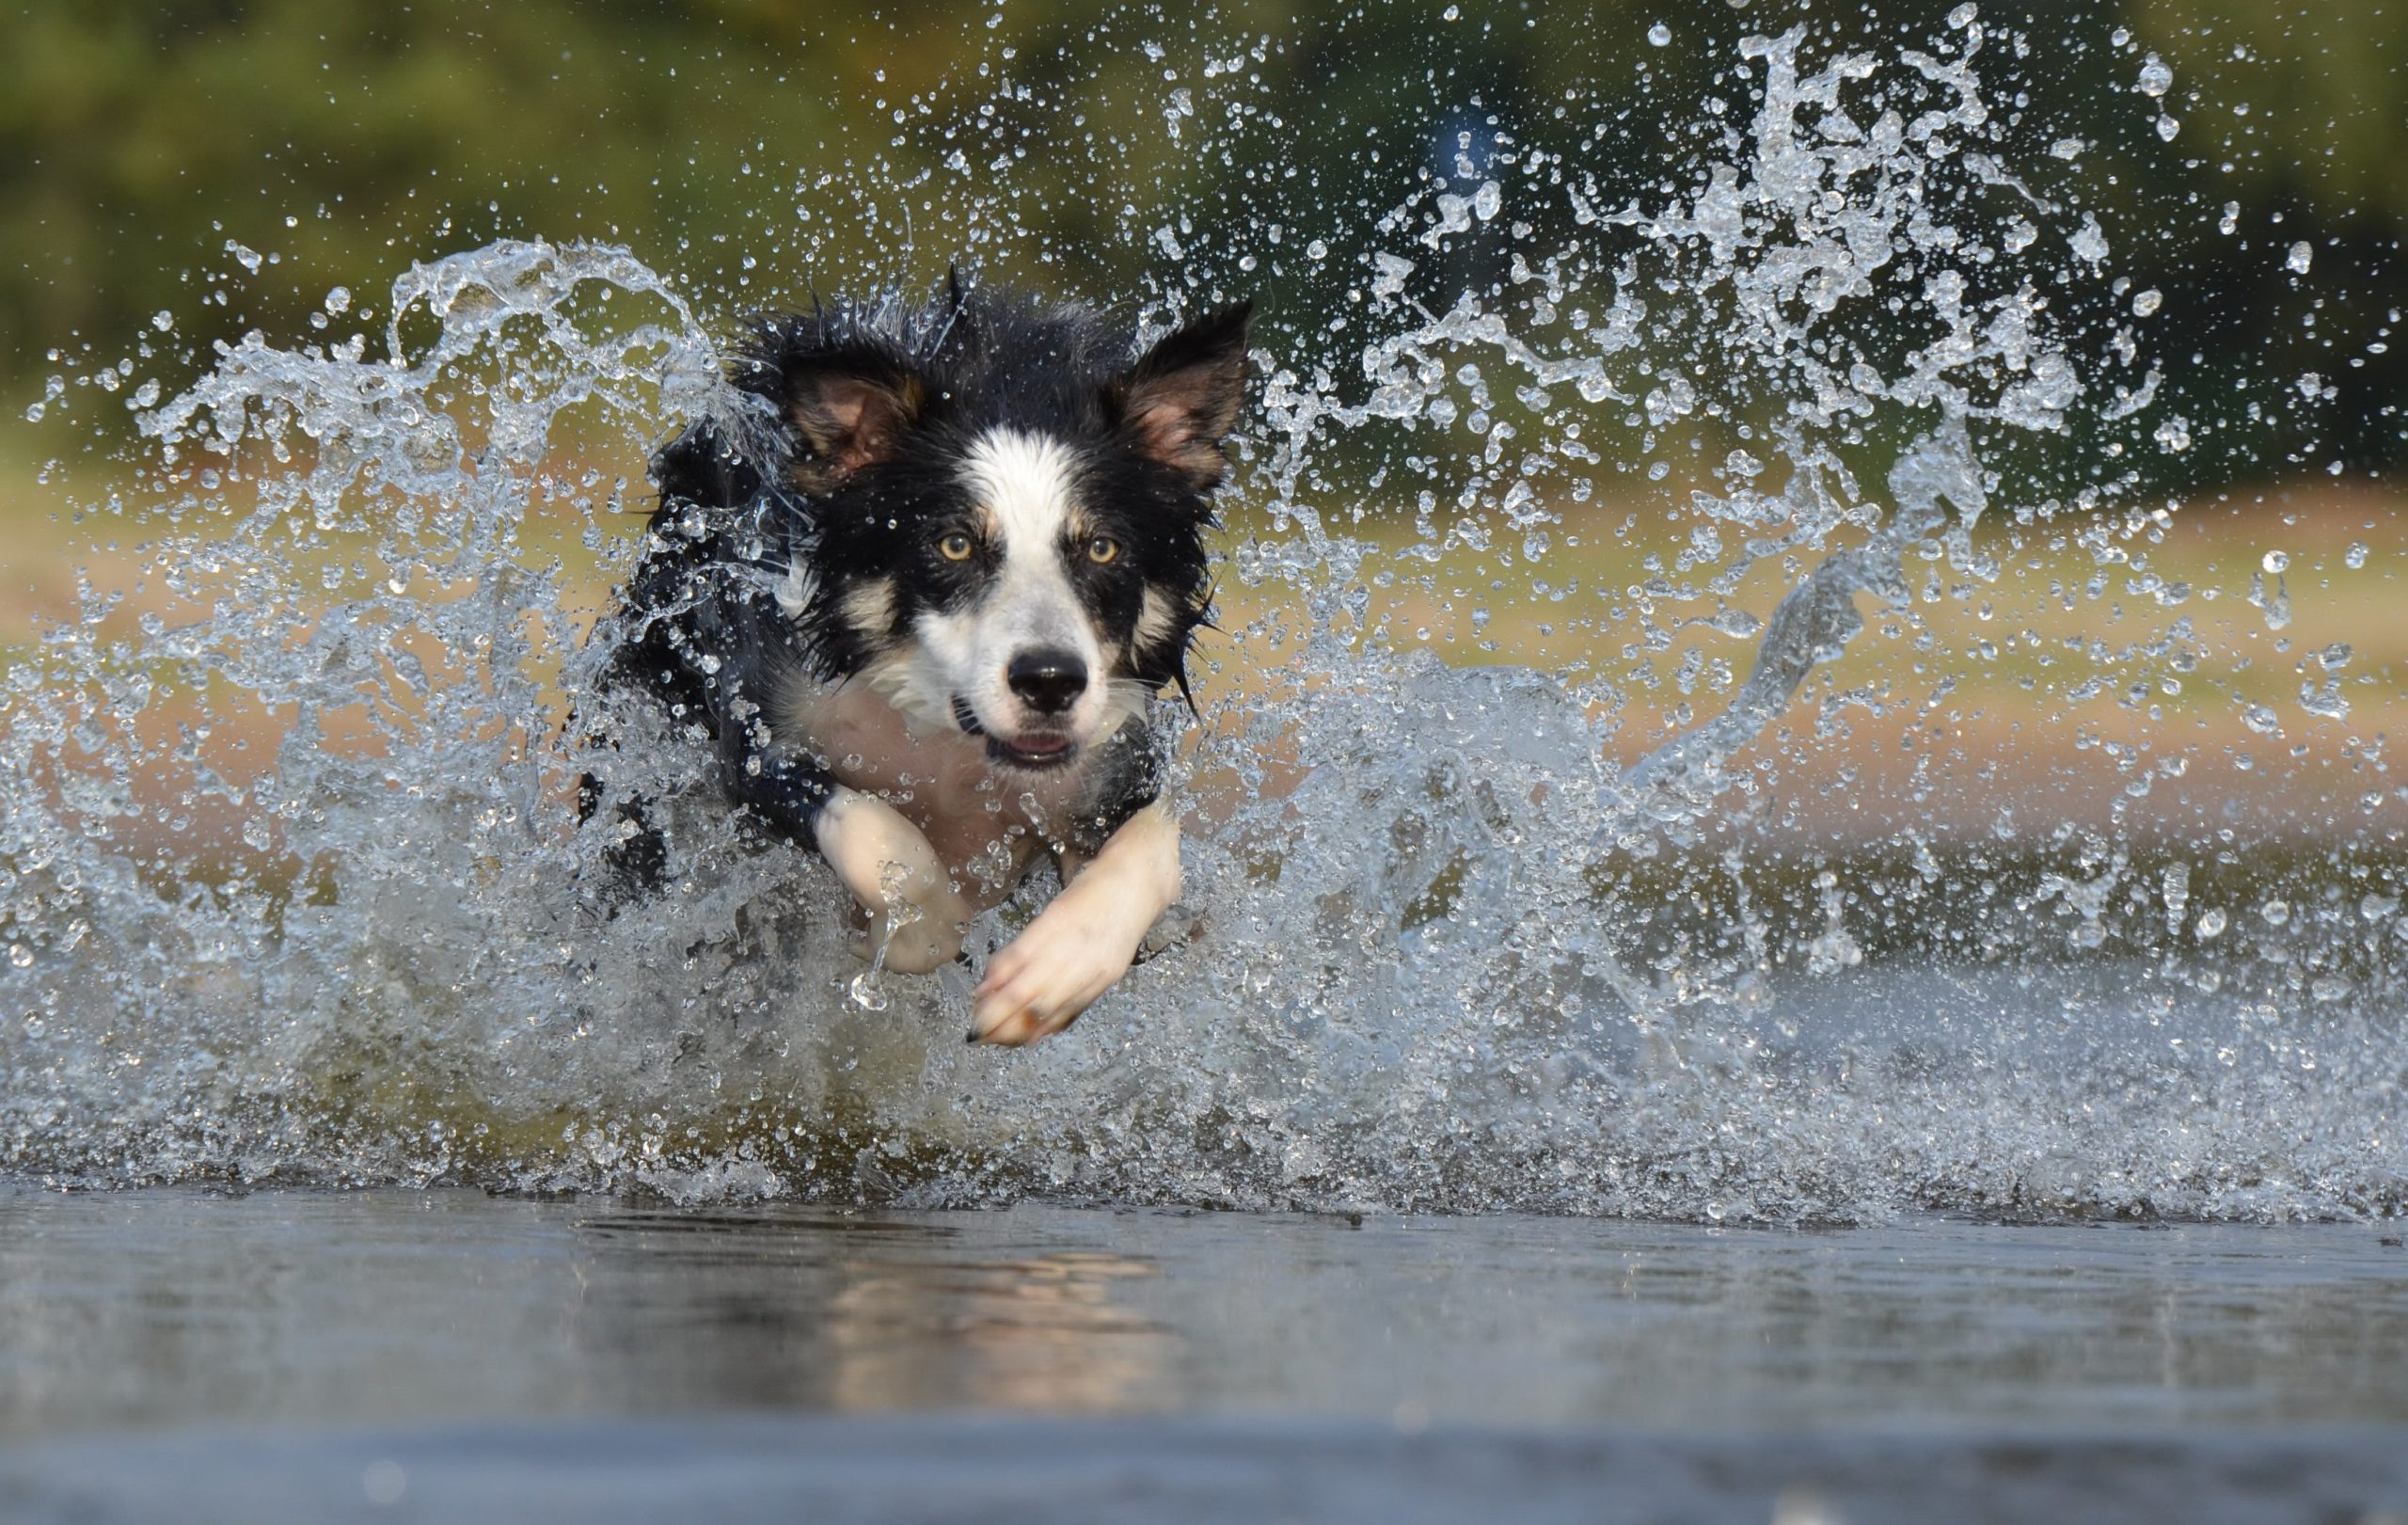 De border collie is een ongelooflijk gewaardeerd hondenras in verschillende sporten hij kan getraind worden in onder andere behendigheid, gehoorzaamheid, dog frisbee, freestyle en schapen drijven